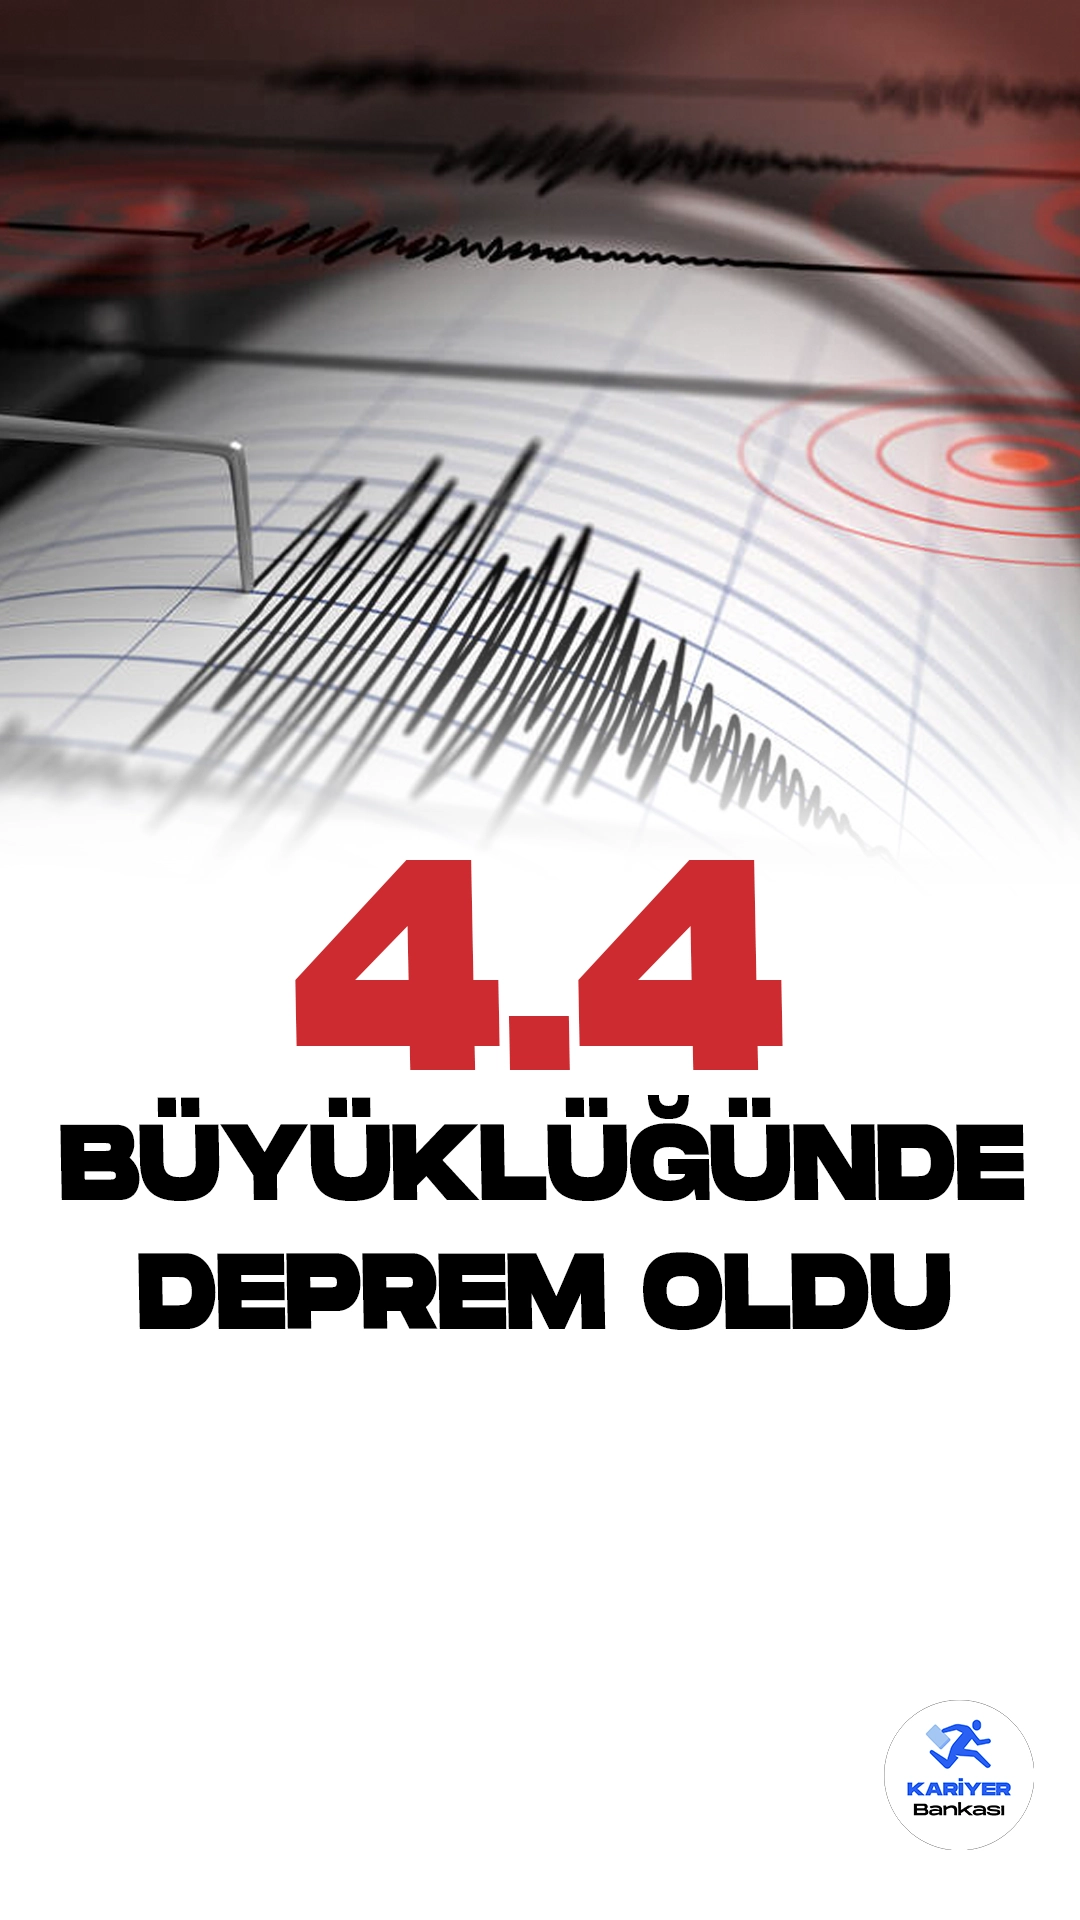 Son Dakika: Burdur'da 4.4 Büyüklüğünde Deprem Oldu. İçişleri Bakanlığı Afet ve Acil Durum Yönetimi Başkanlığı (AFAD) Deprem Daire tarafından yayımlanan son dakika duyurusuna göre, Burdur'da 4.4 büyüklüğünde deprem meydana geldi.